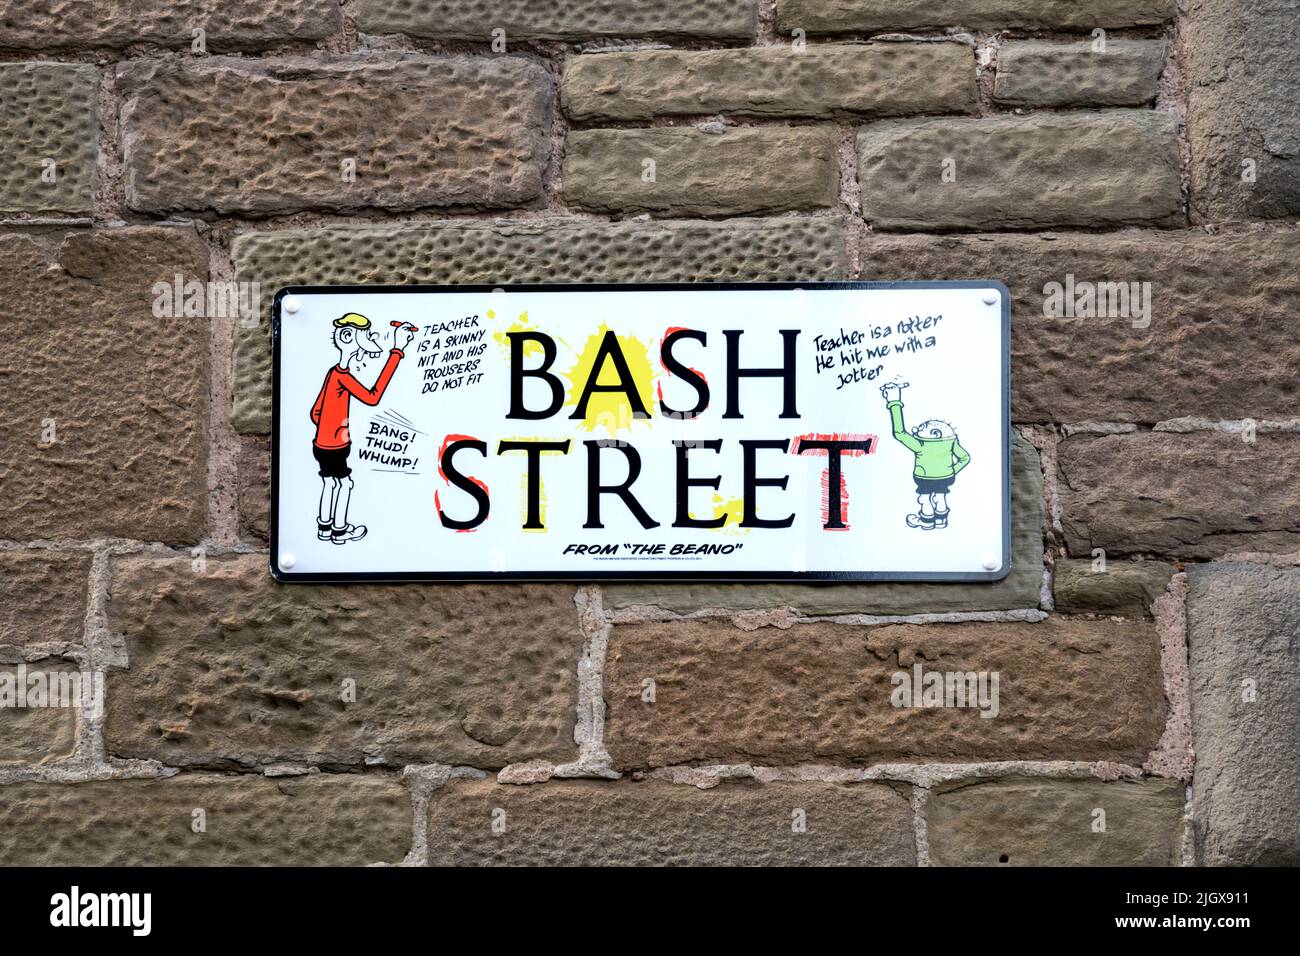 Straßenschild für Bash Street in Dundee. Mit den Bash Street Kids aus dem in Dundee von D. C. Thomson produzierten Beano-Comic. Stockfoto